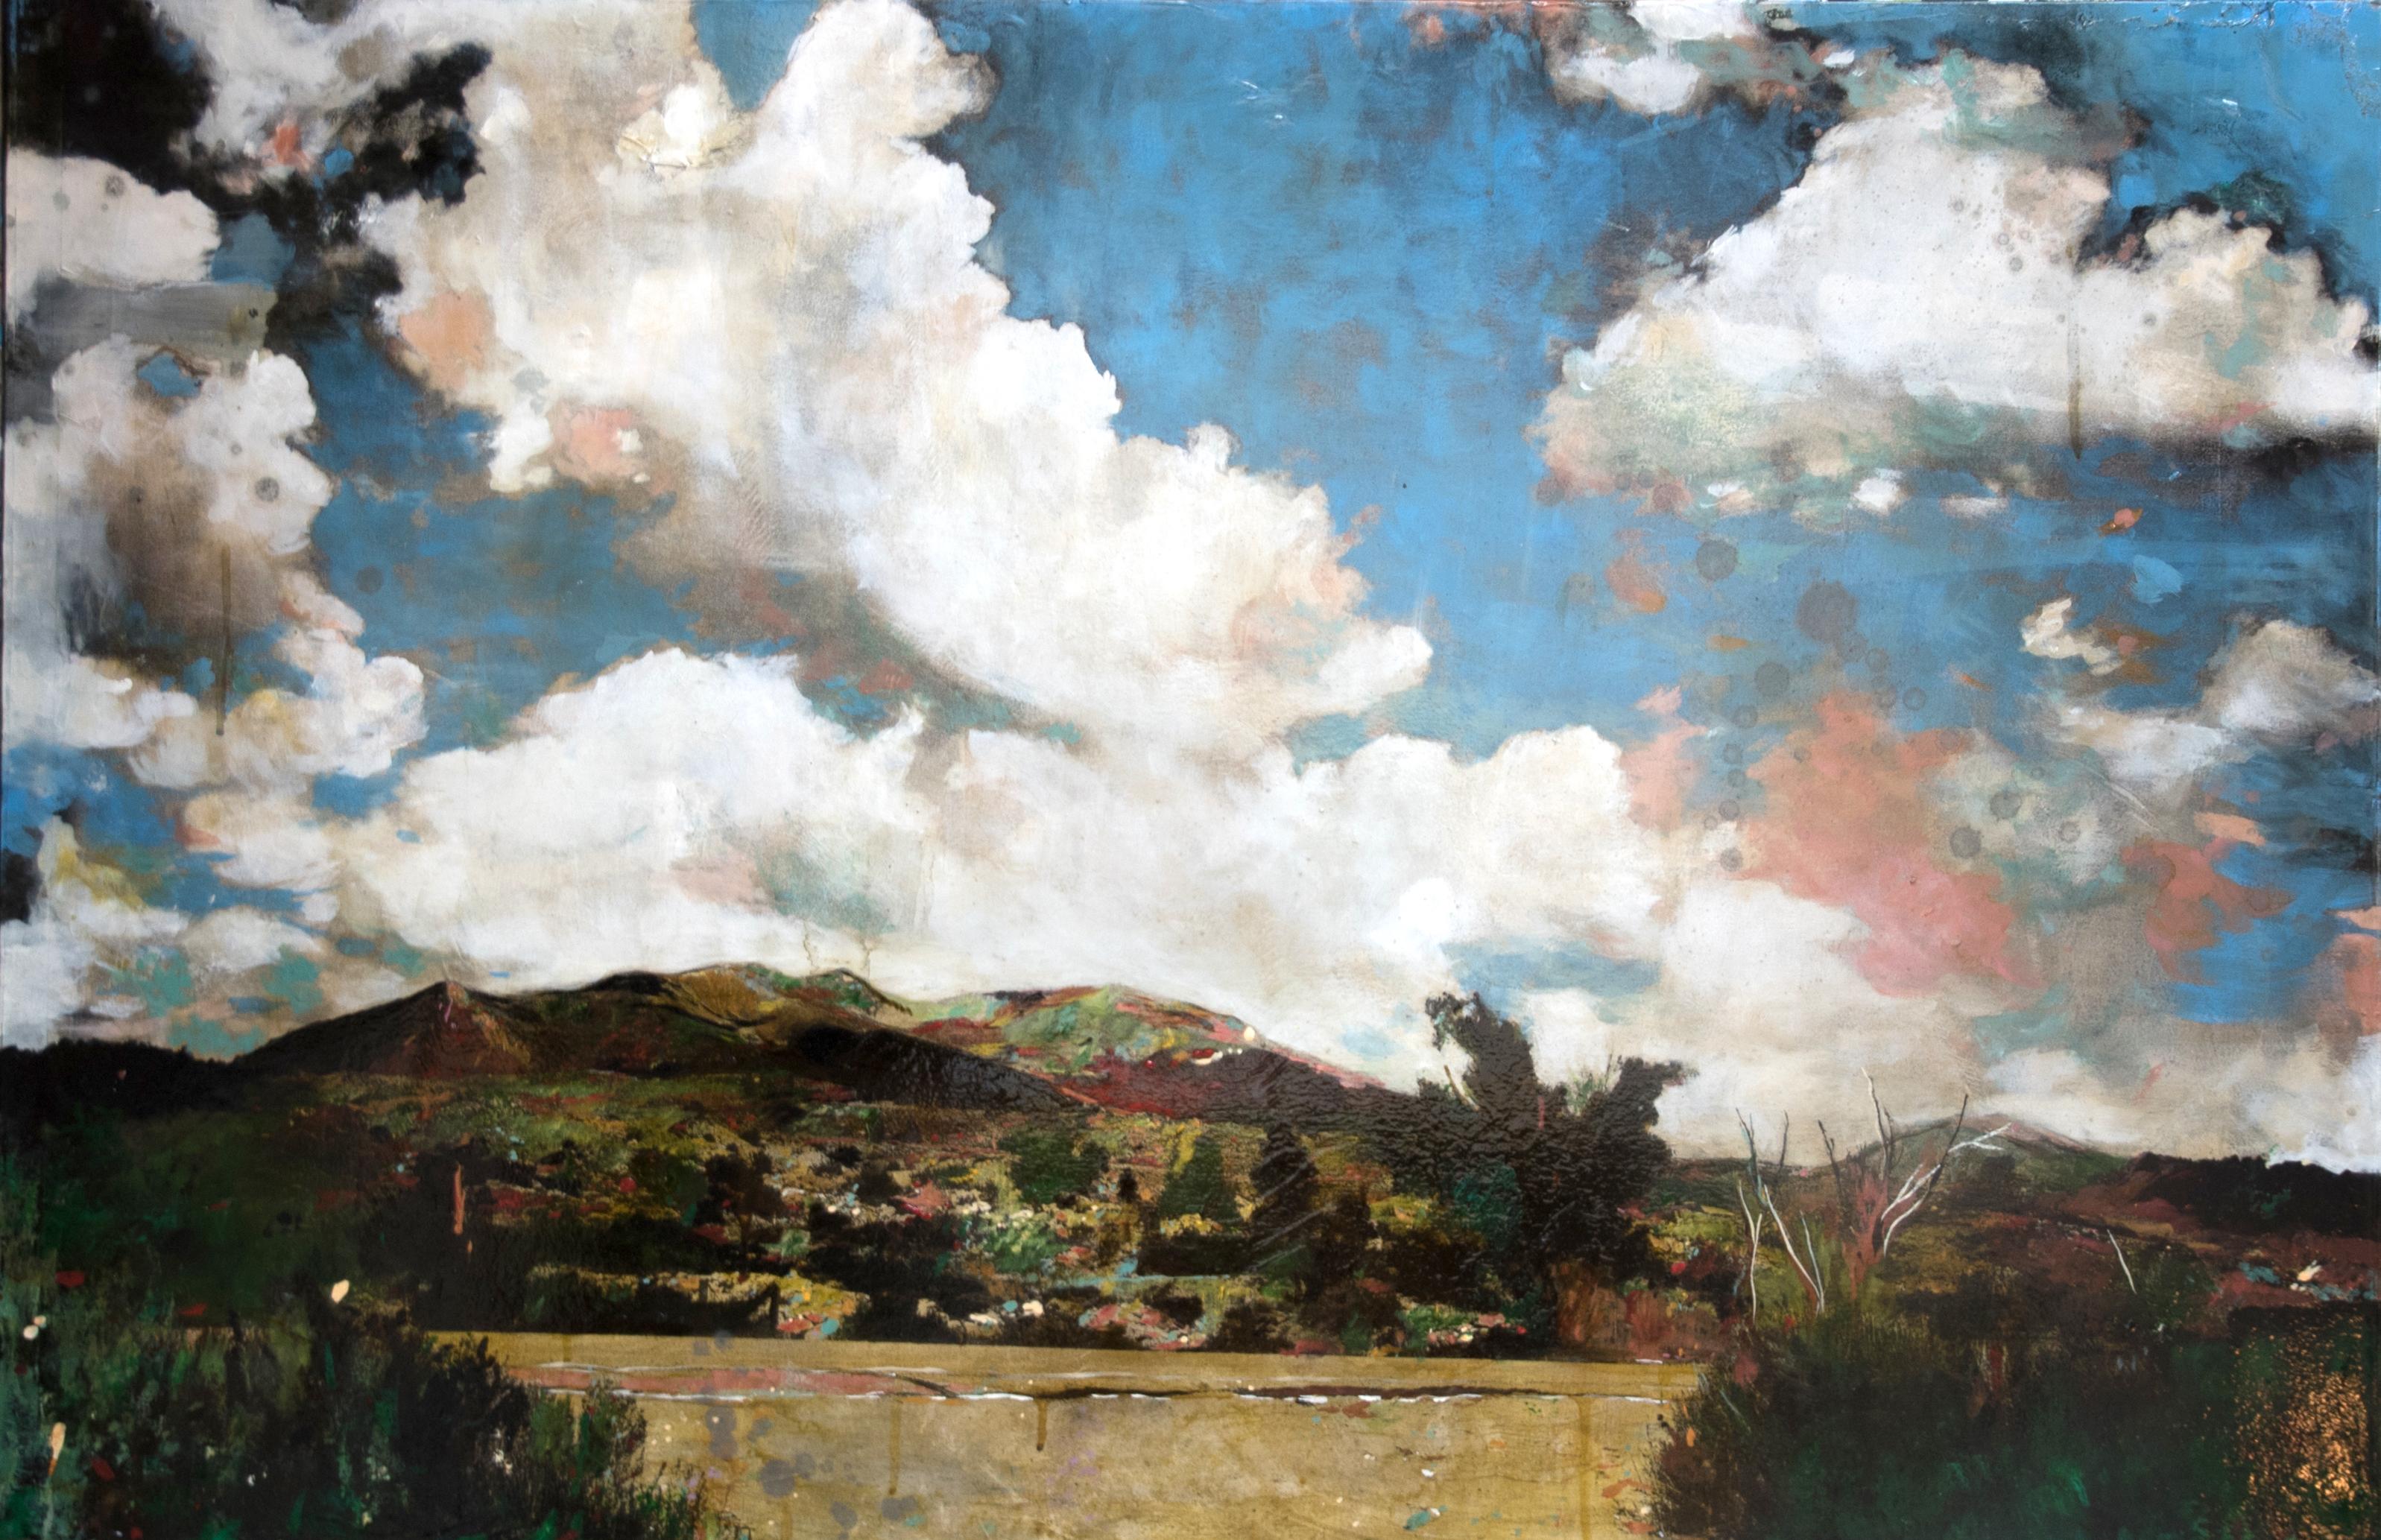 Landscape Painting Ayline Olukman - Field - Peinture à l'huile - Paysage occidental des États-Unis